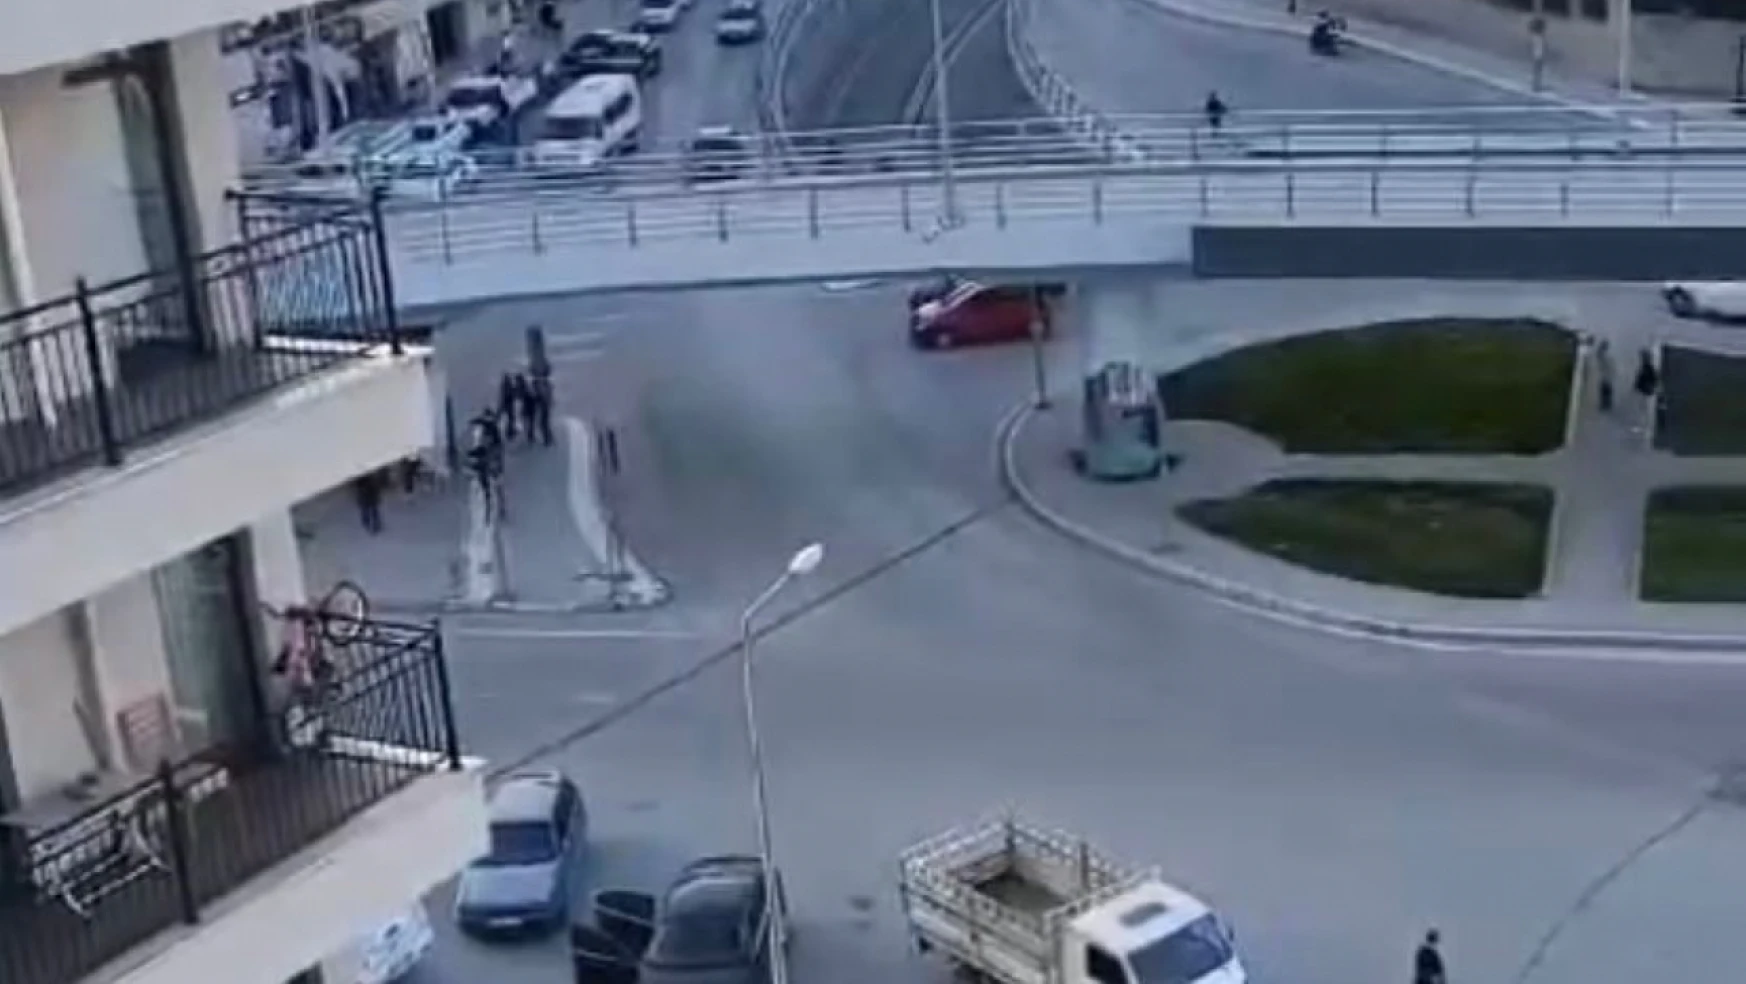 Elazığ'da 1 kişinin öldüğü silahlı kavgaya ilişkin yeni görüntüler ortaya çıktı